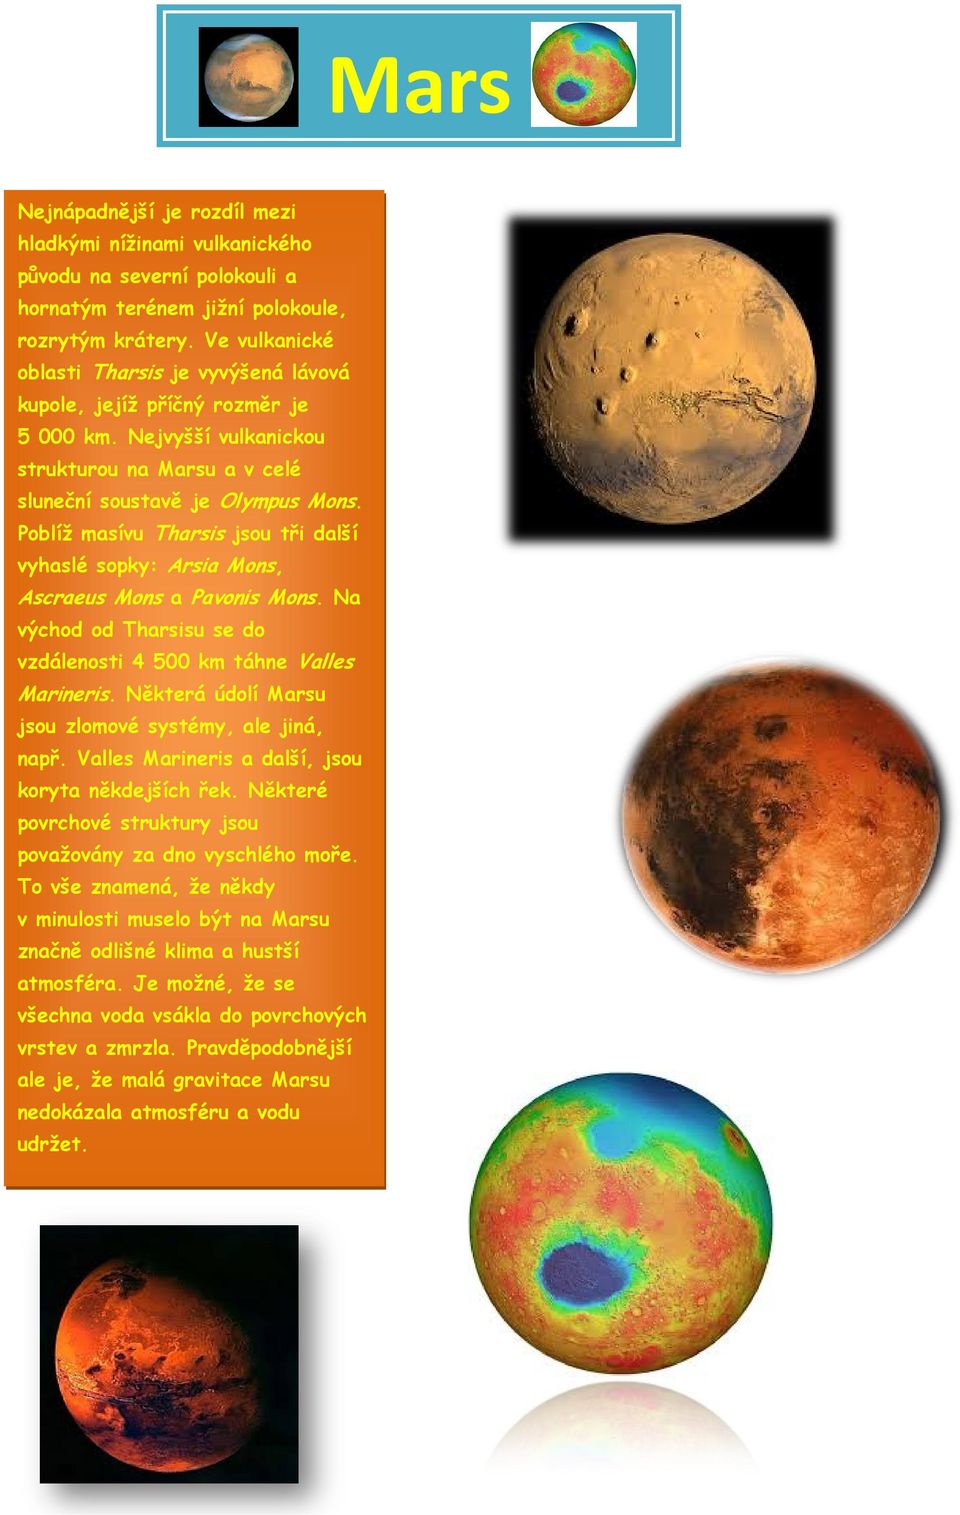 sluneční soustavě je Olympus Poblíž masívu Tharsis jsou tři další vyhaslé sopky: Arsia Mons, Ascraeus Mons a Pavonis Mons. Na východ od Tharsisu se do vzdálenosti 4 500 km táhne Valles Marineris.